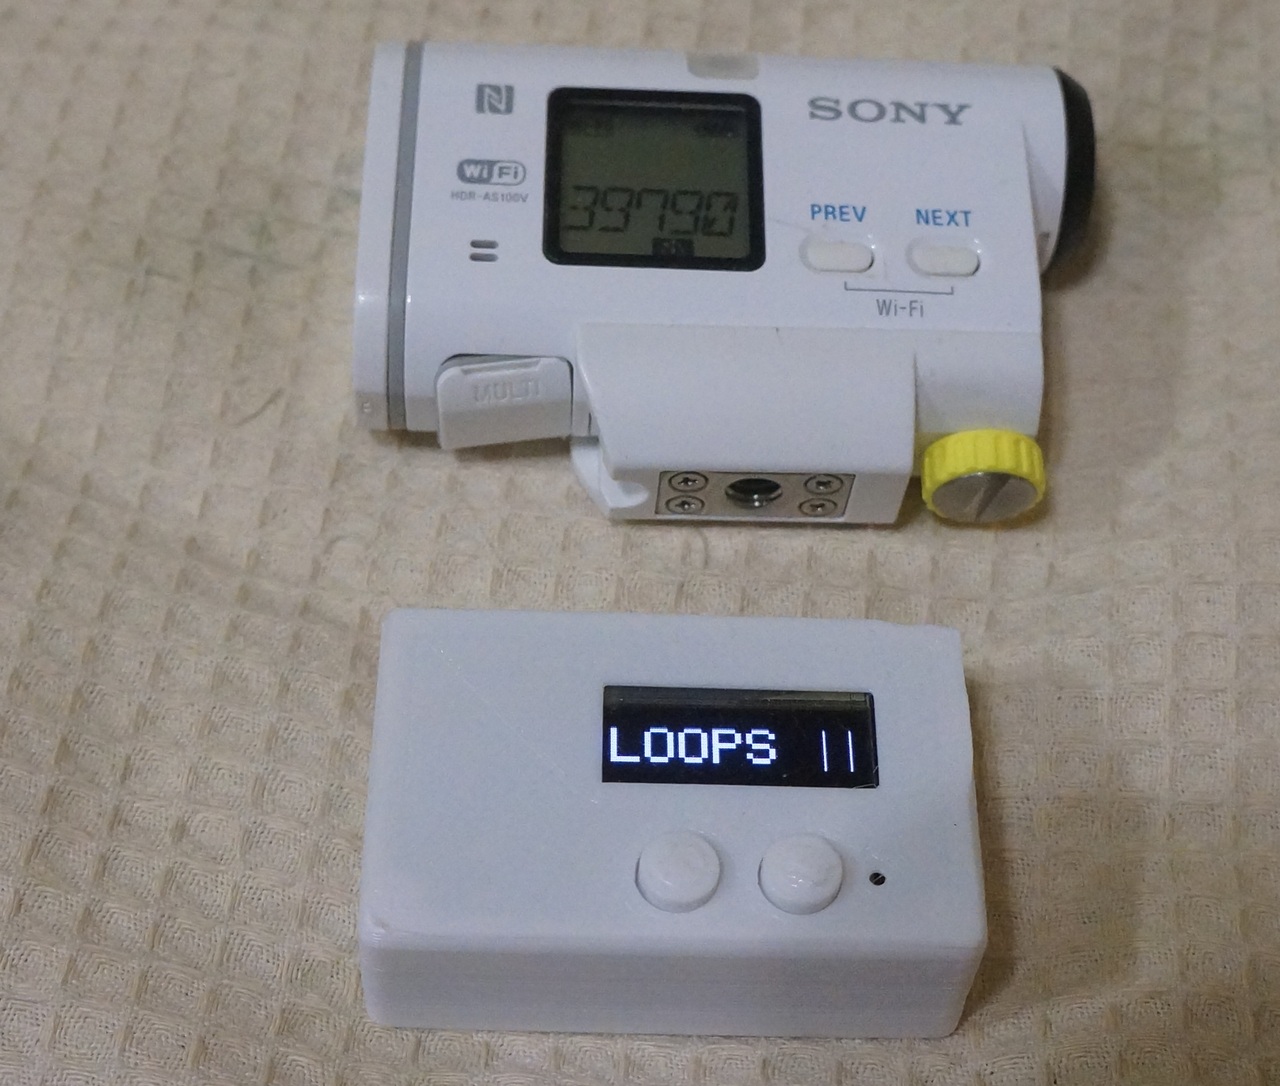 ДУ с внешним триггером для камер SONY HDR на ESP8266 - 16